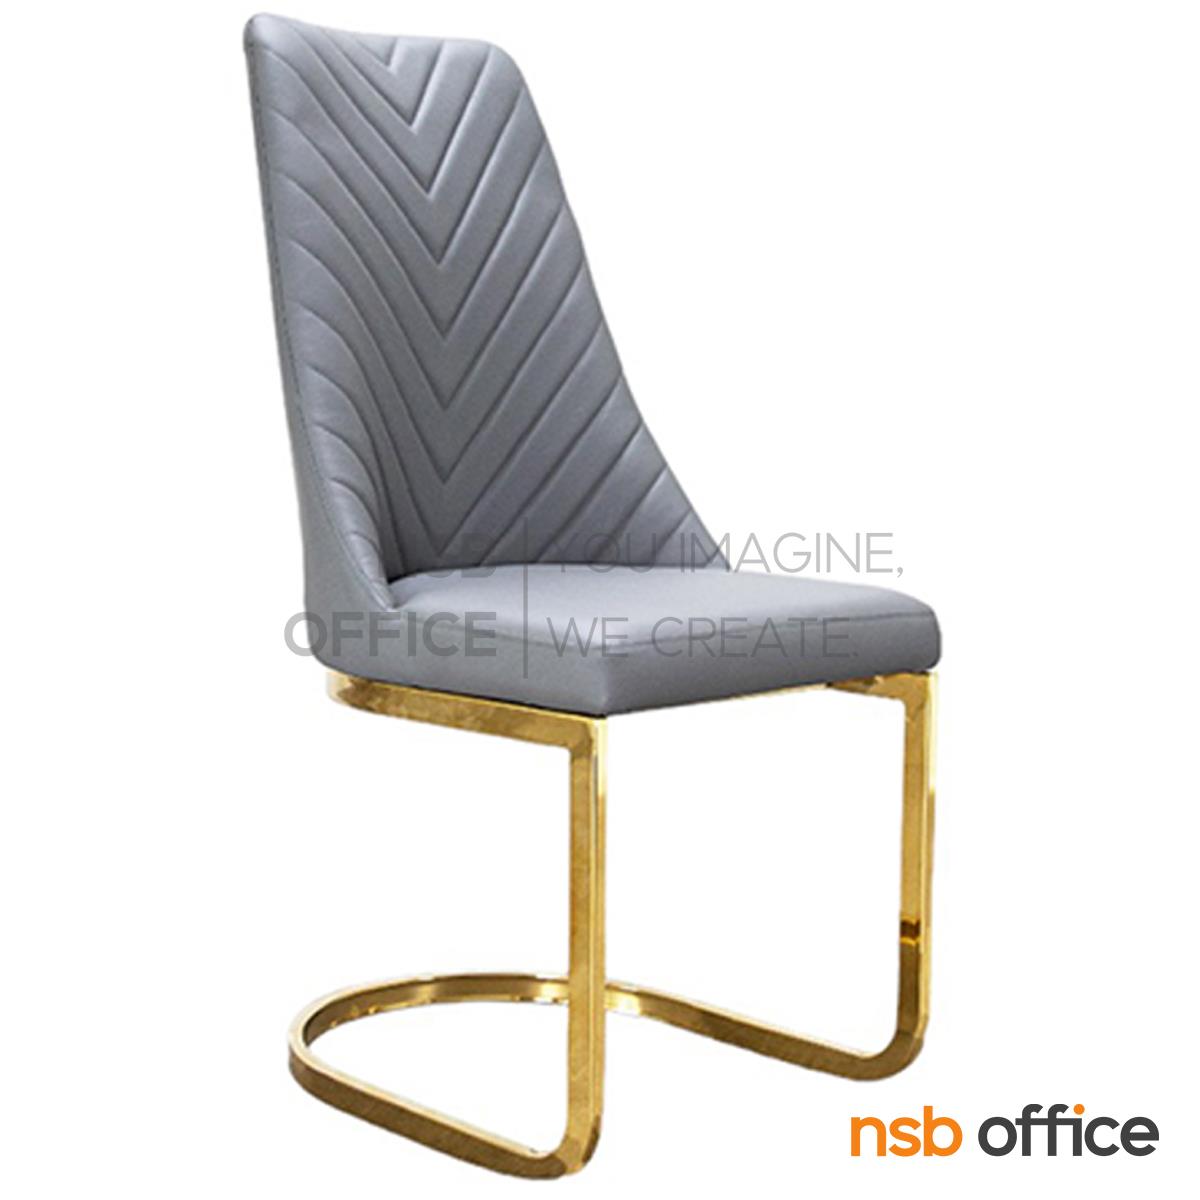 เก้าอี้โมเดิร์น รุ่น Malty (มอลต์)  โครงขาเหล็กชุบสีทอง